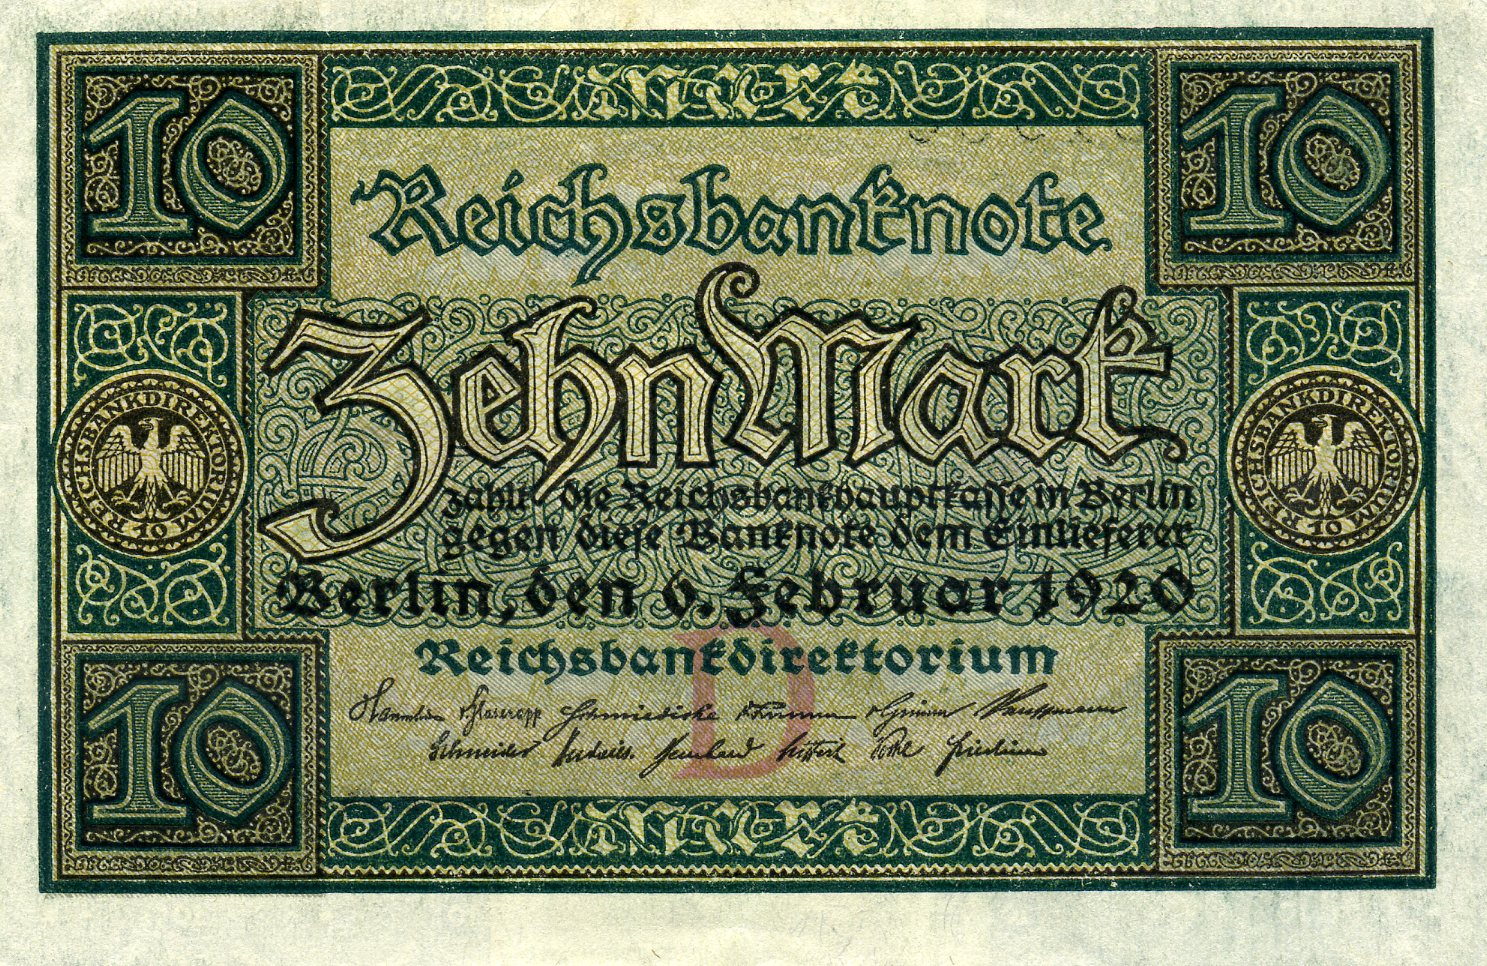 10 марок 6 февраля 1920 года. Аверс. Реферат Рефератович.